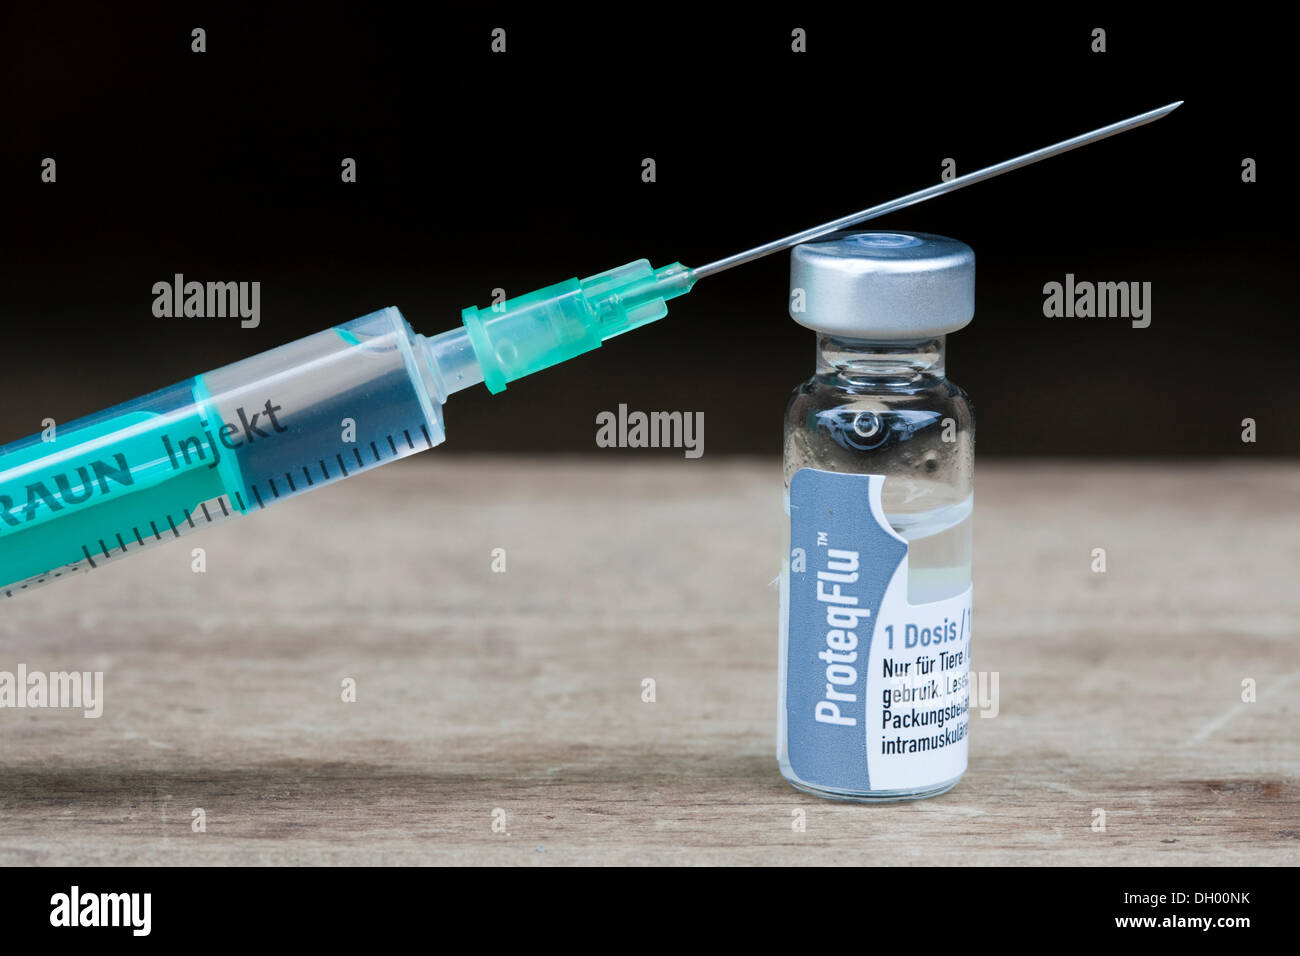 La vacuna contra la gripe para los caballos, botella de suero y una aguja de inyección Foto de stock